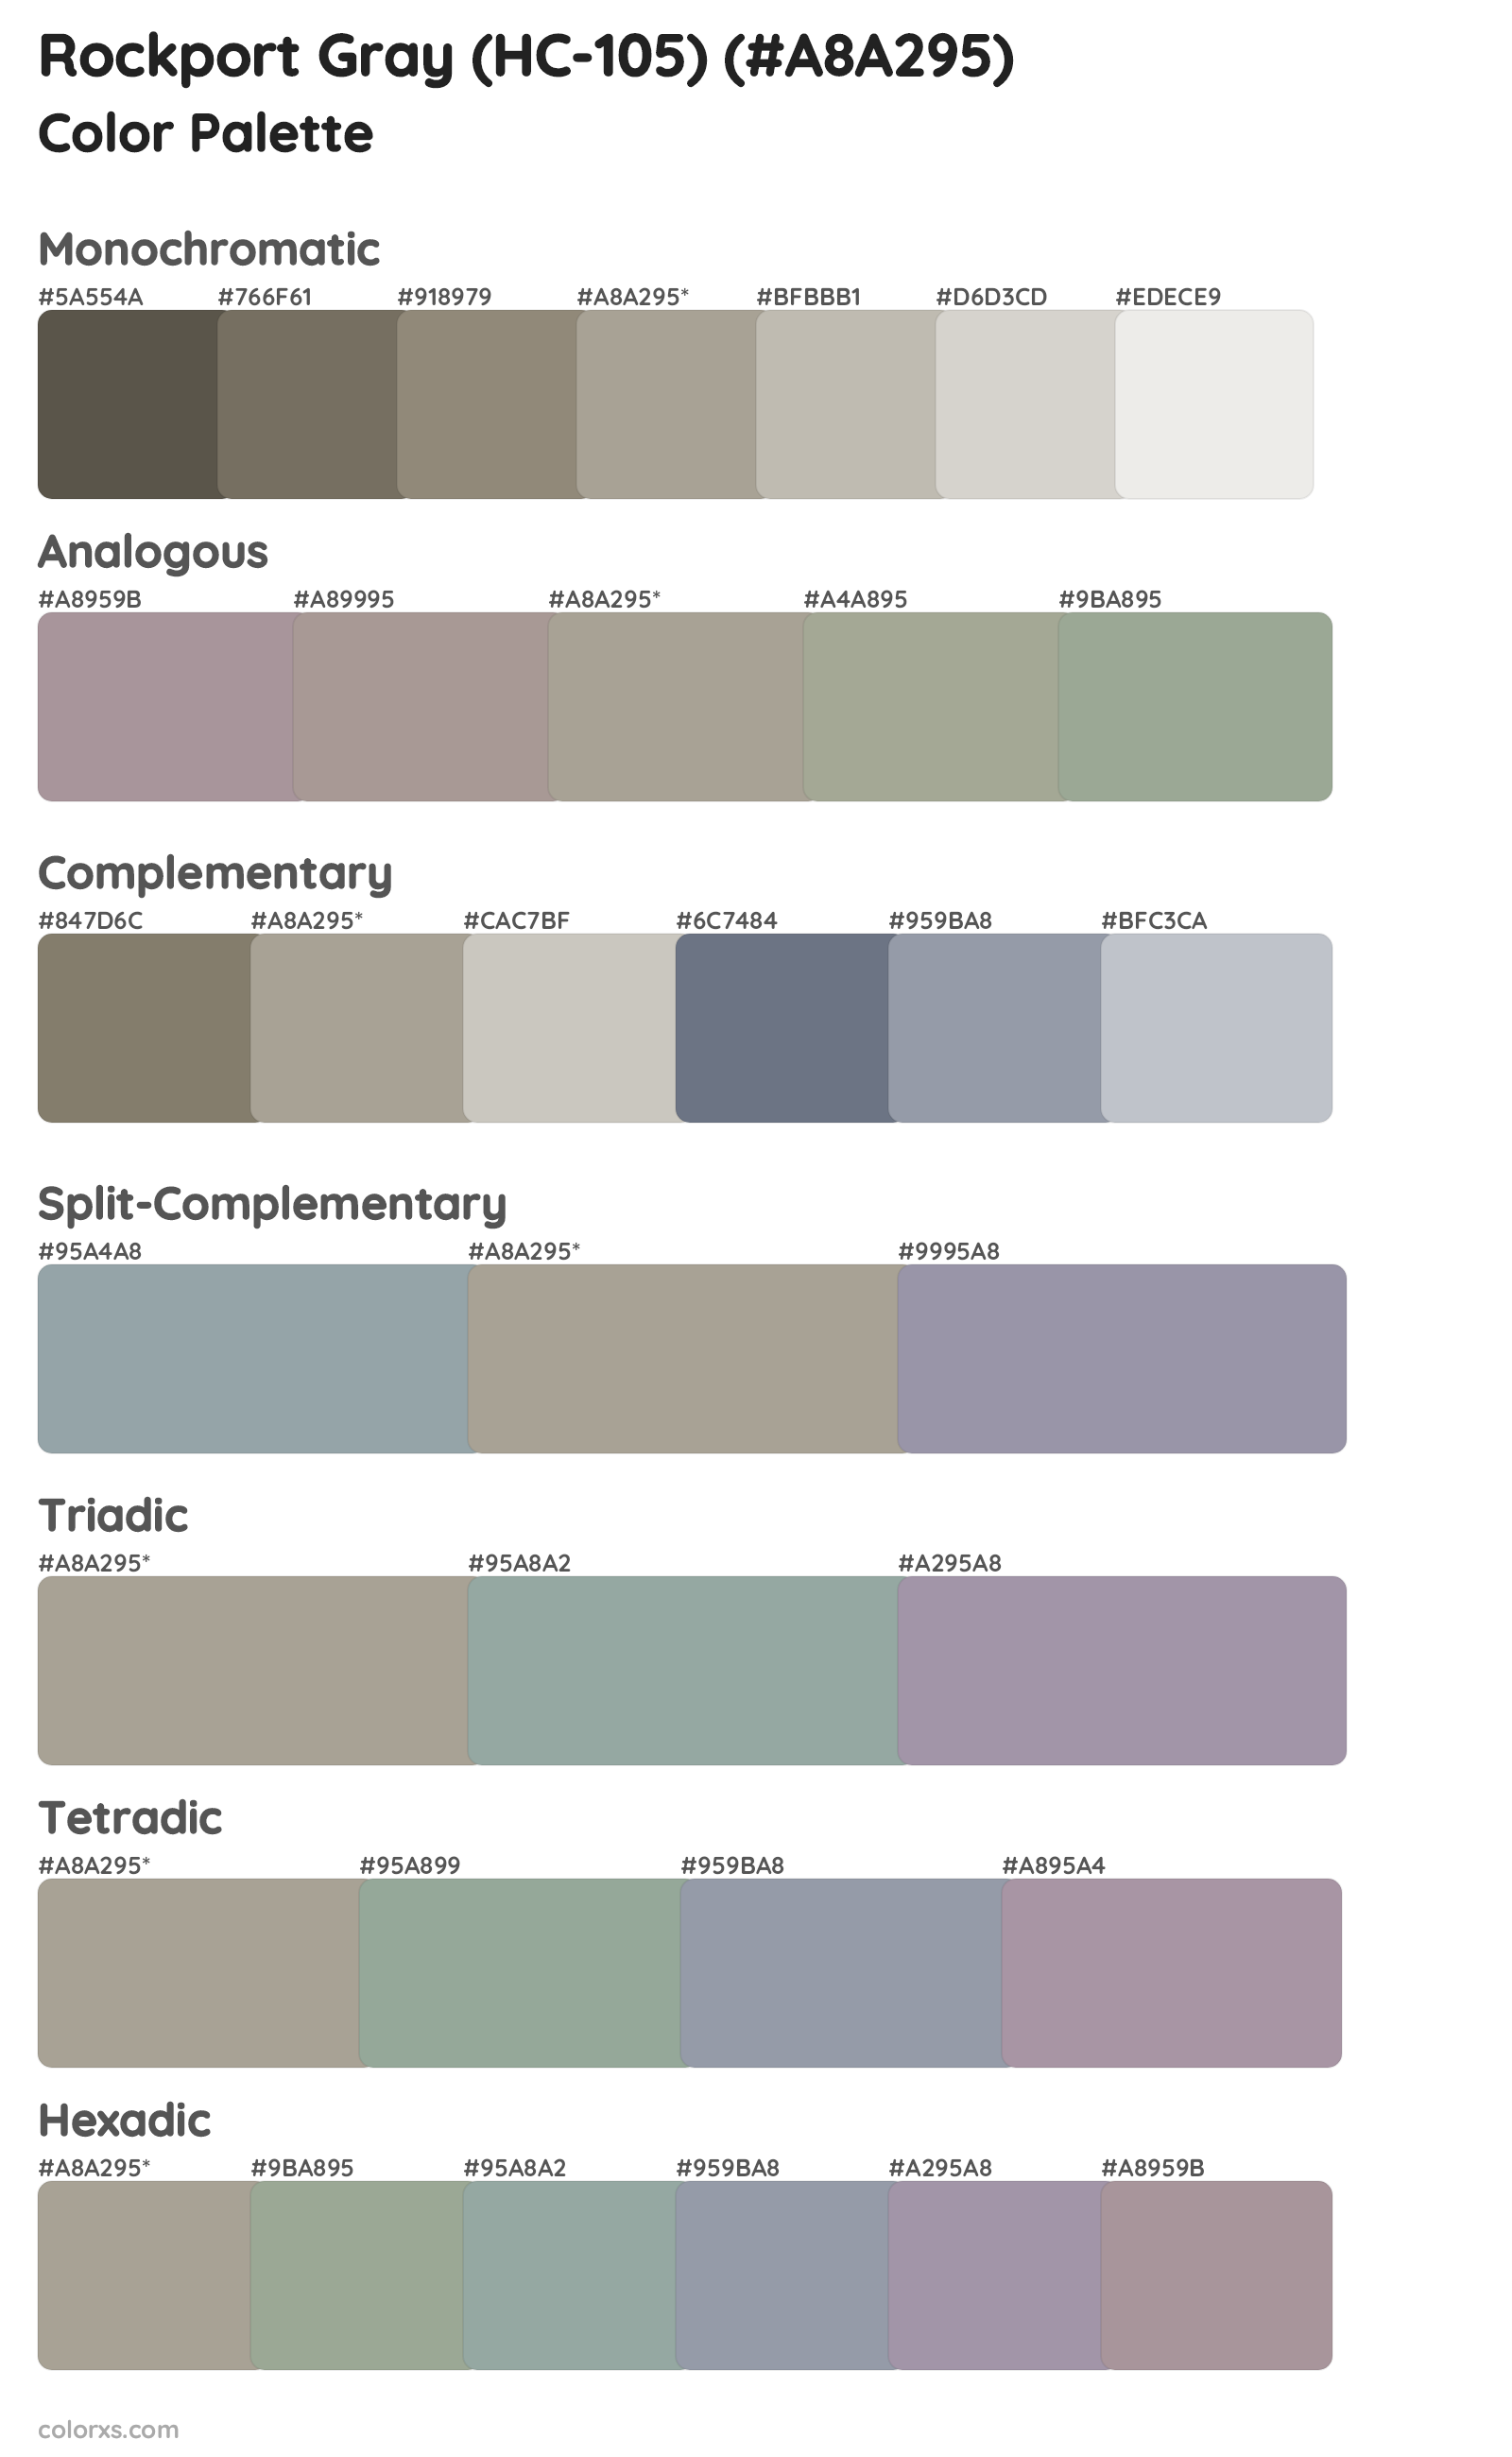 Rockport Gray (HC-105) Color Scheme Palettes